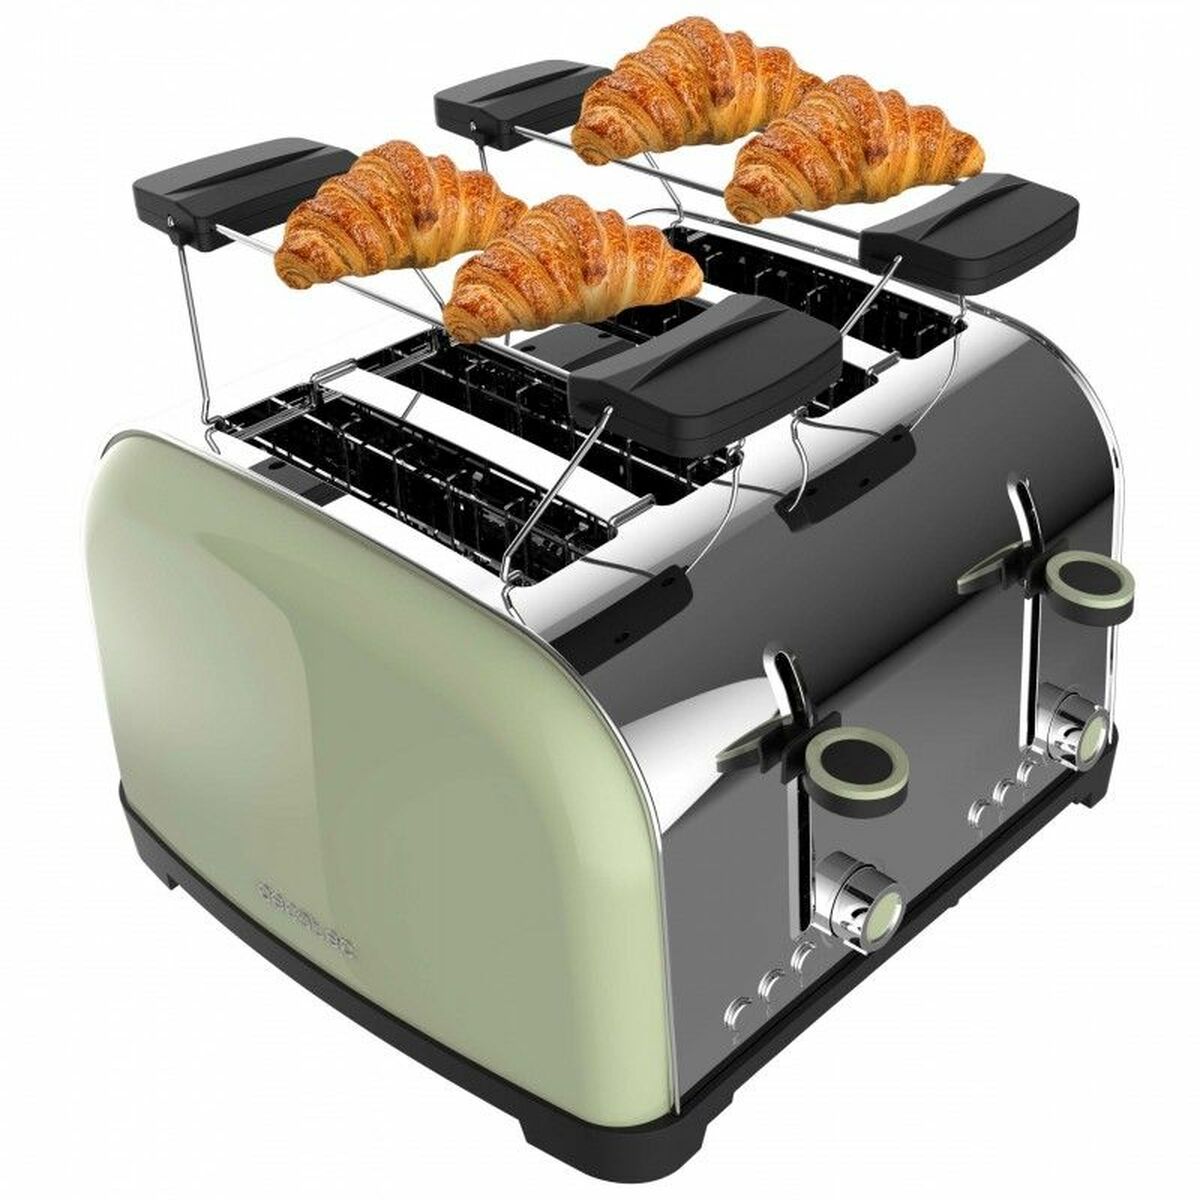 Kaufe Toaster Cecotec oastin' time 1700 Double 1700 W bei AWK Flagship um € 72.00